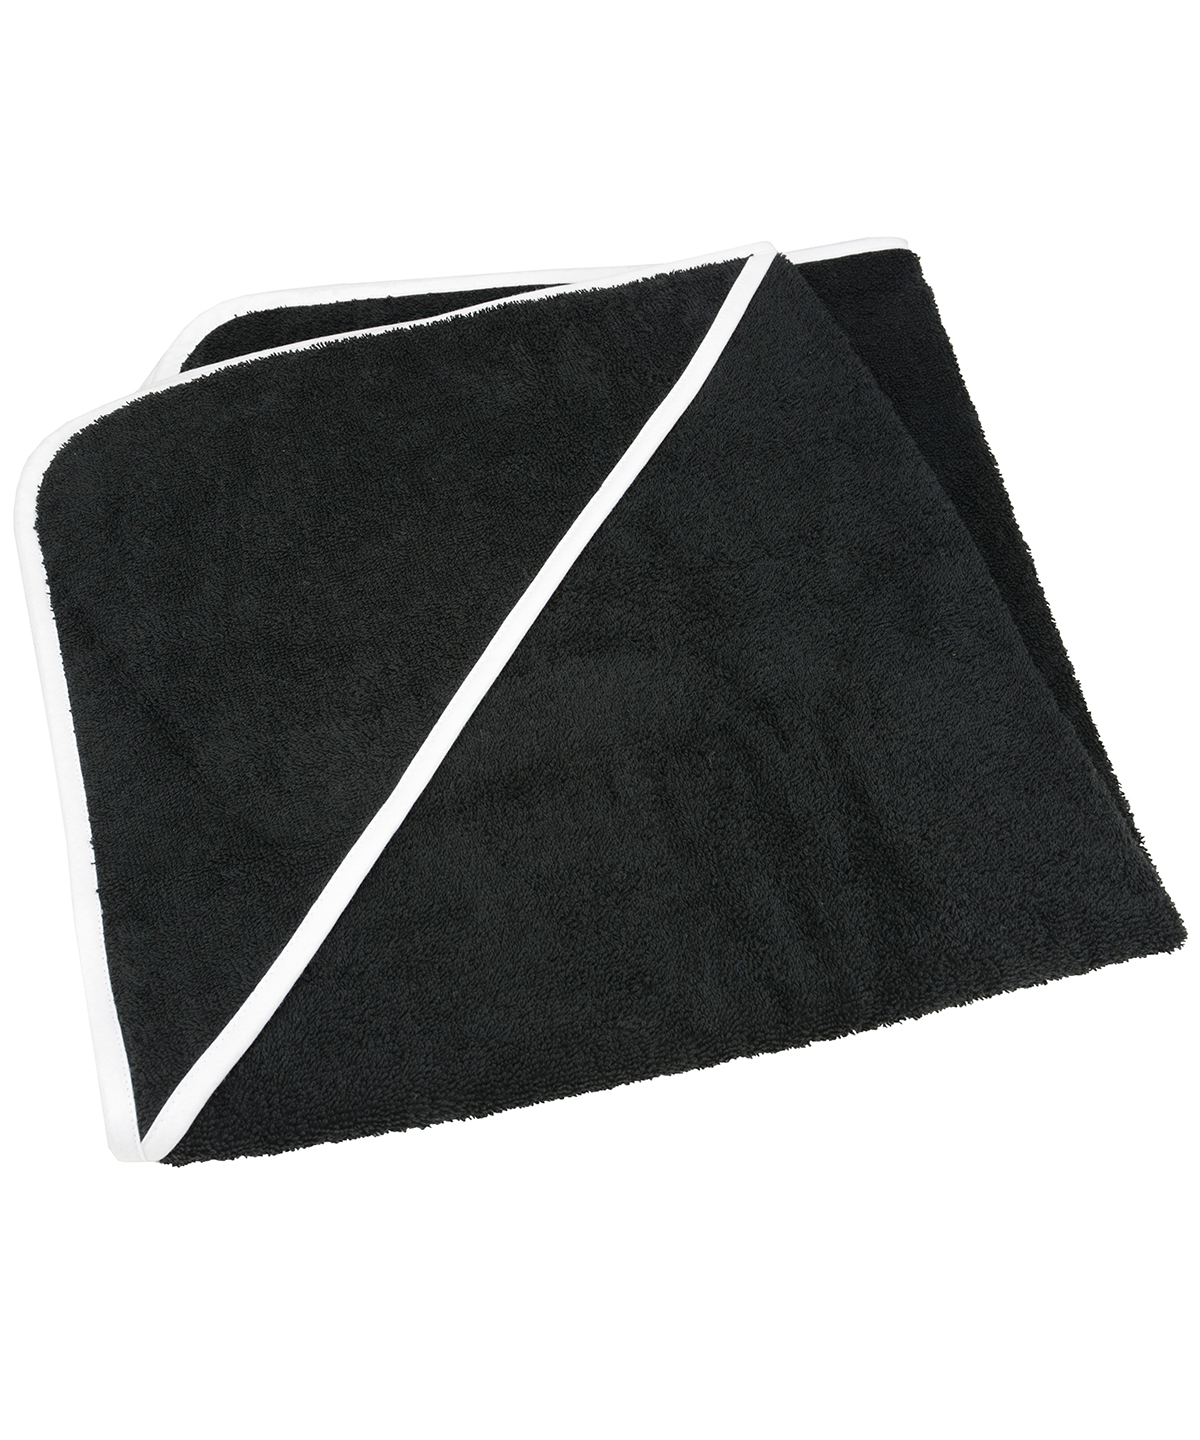 Babiezz® Medium Baby Hooded Towel Black/Black/White Size One Size